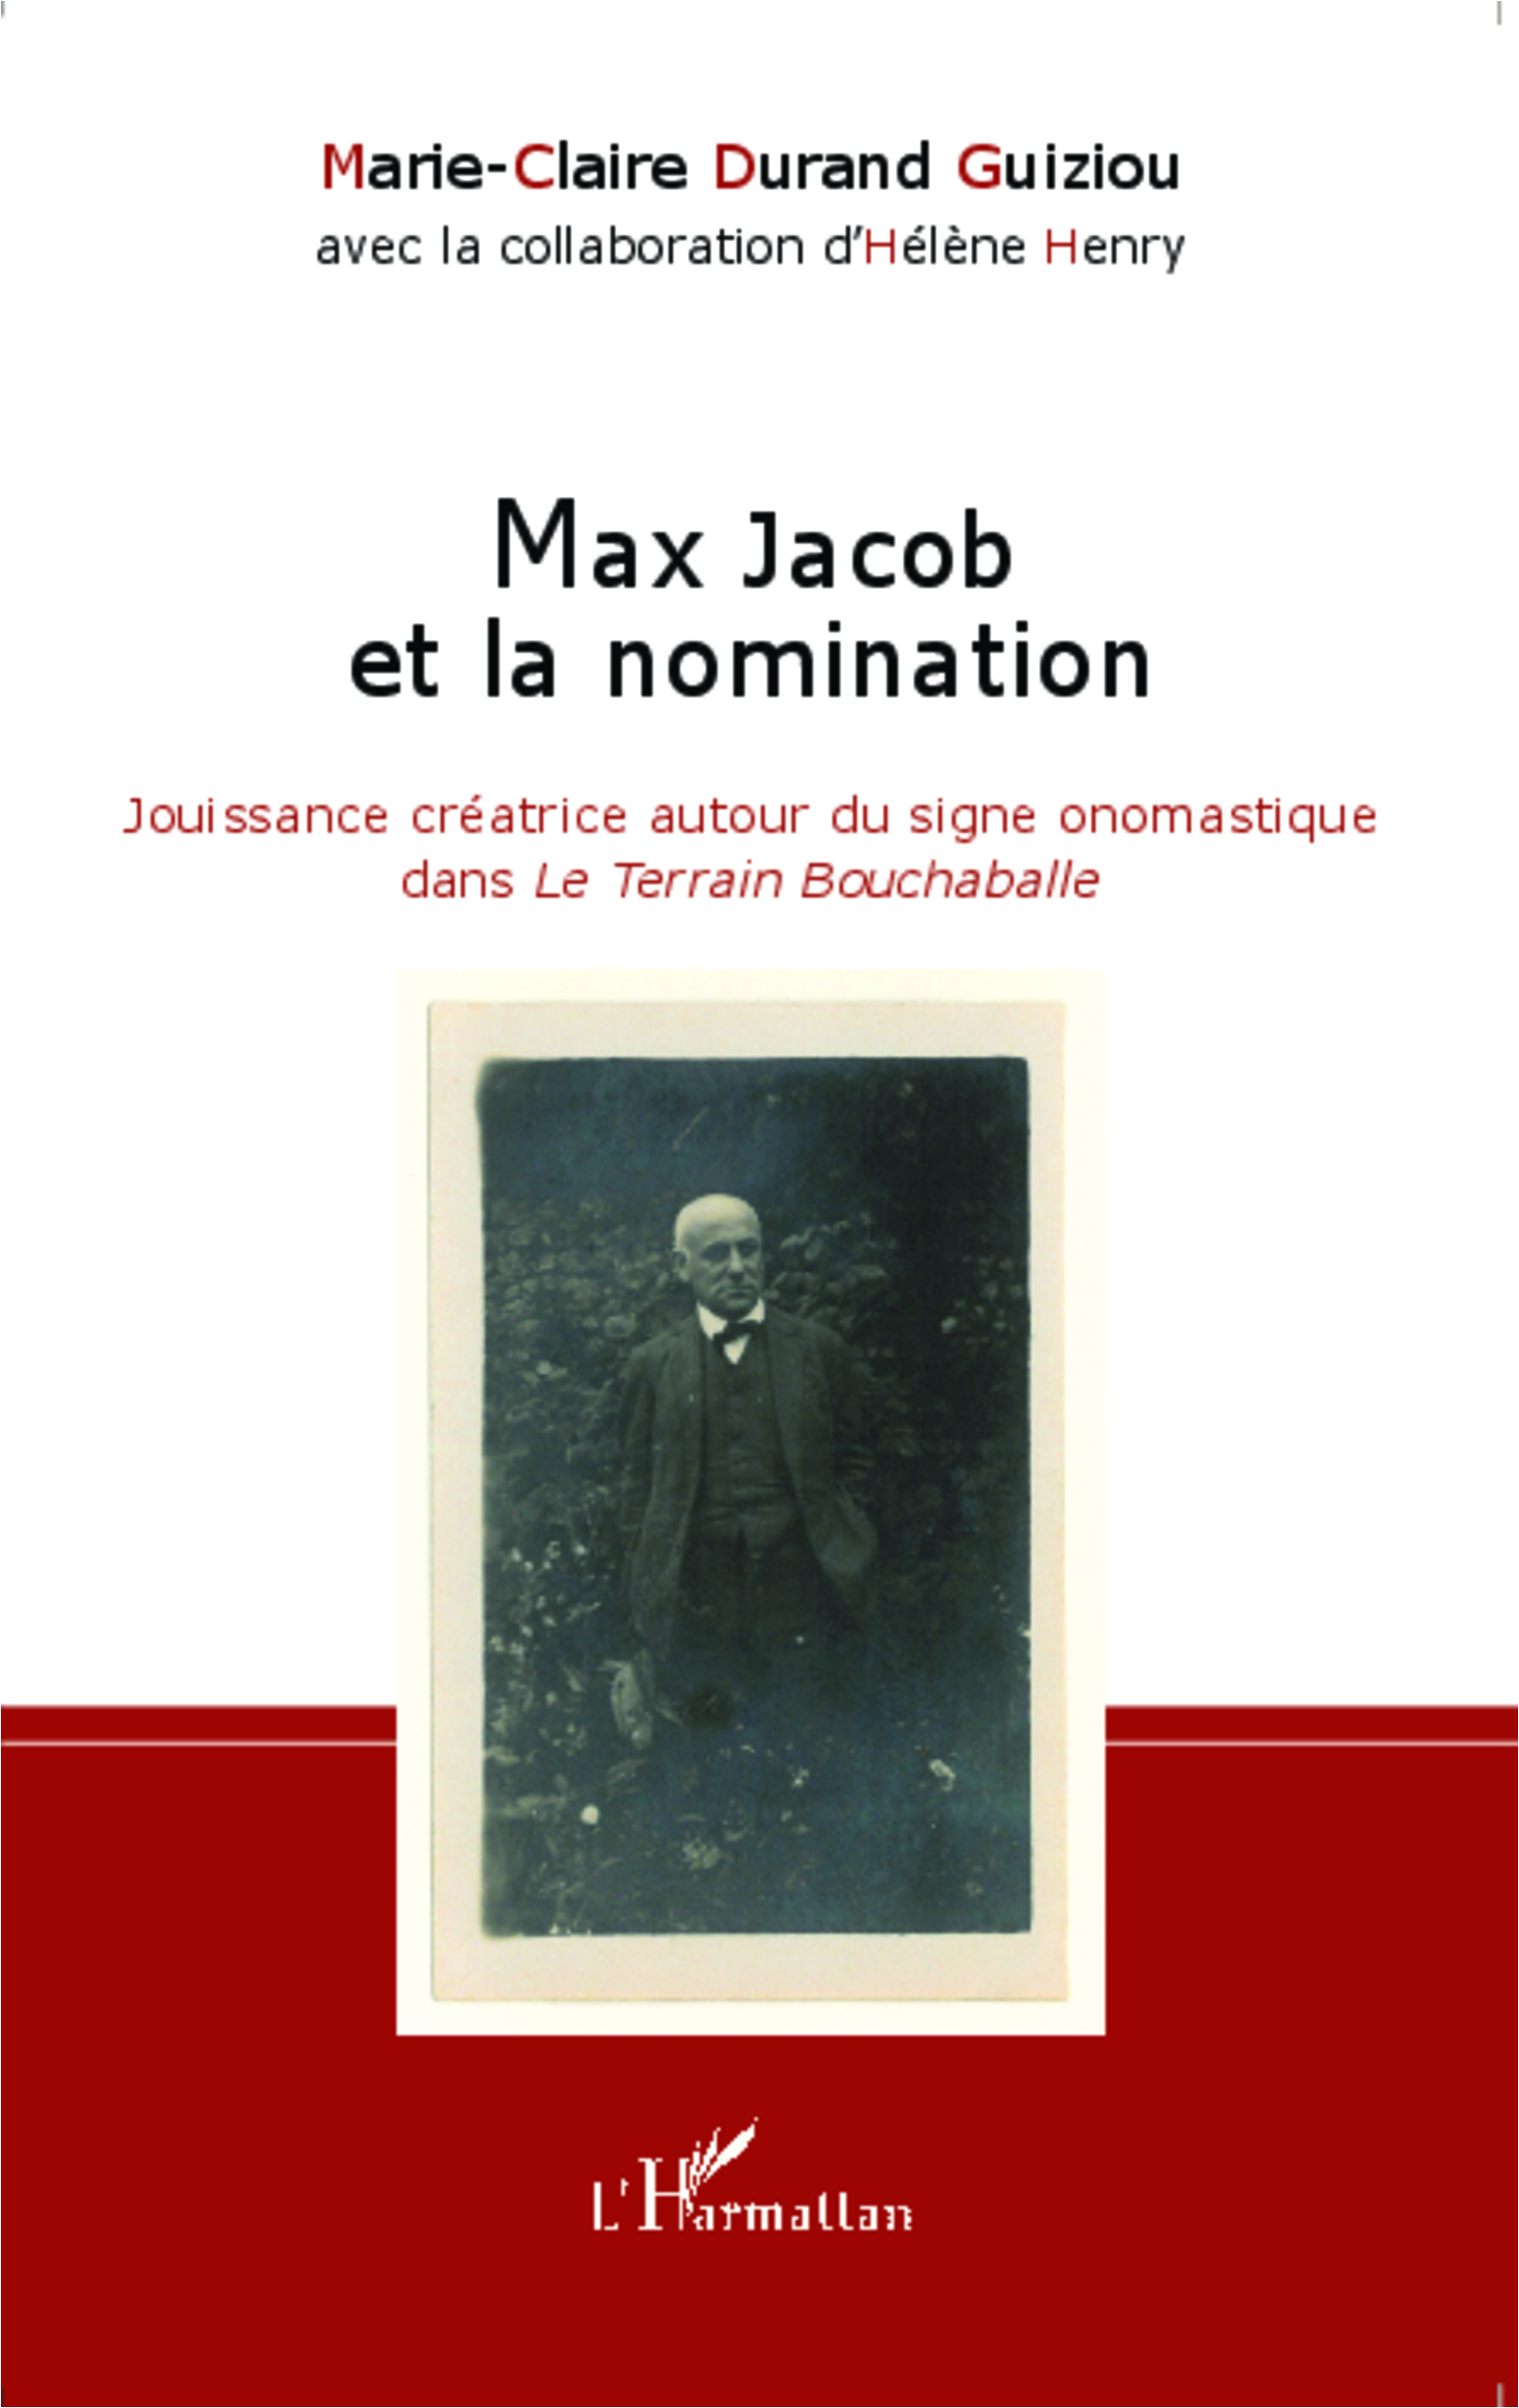 M.-C. Durand Guiziou, Max Jacob et la Nomination - Jouissance créatrice autour du signe onomastique dans Le Terrain Bouchaballe